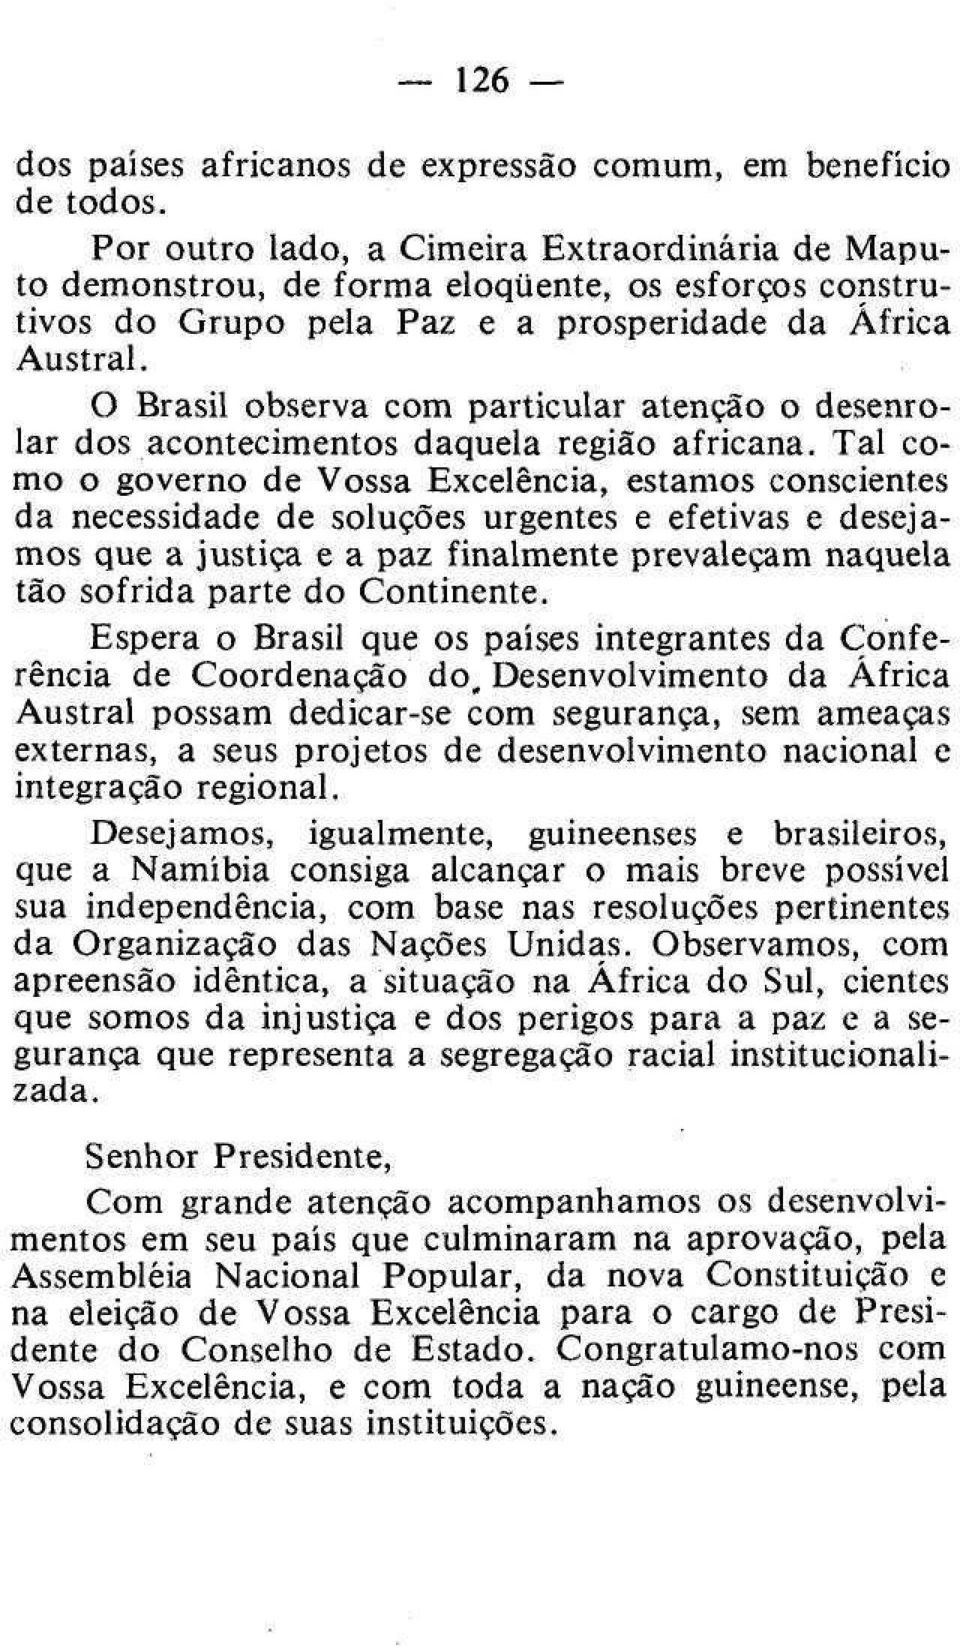 O Brasil observa com particular atenção o desenrolar dos acontecimentos daquela região africana.